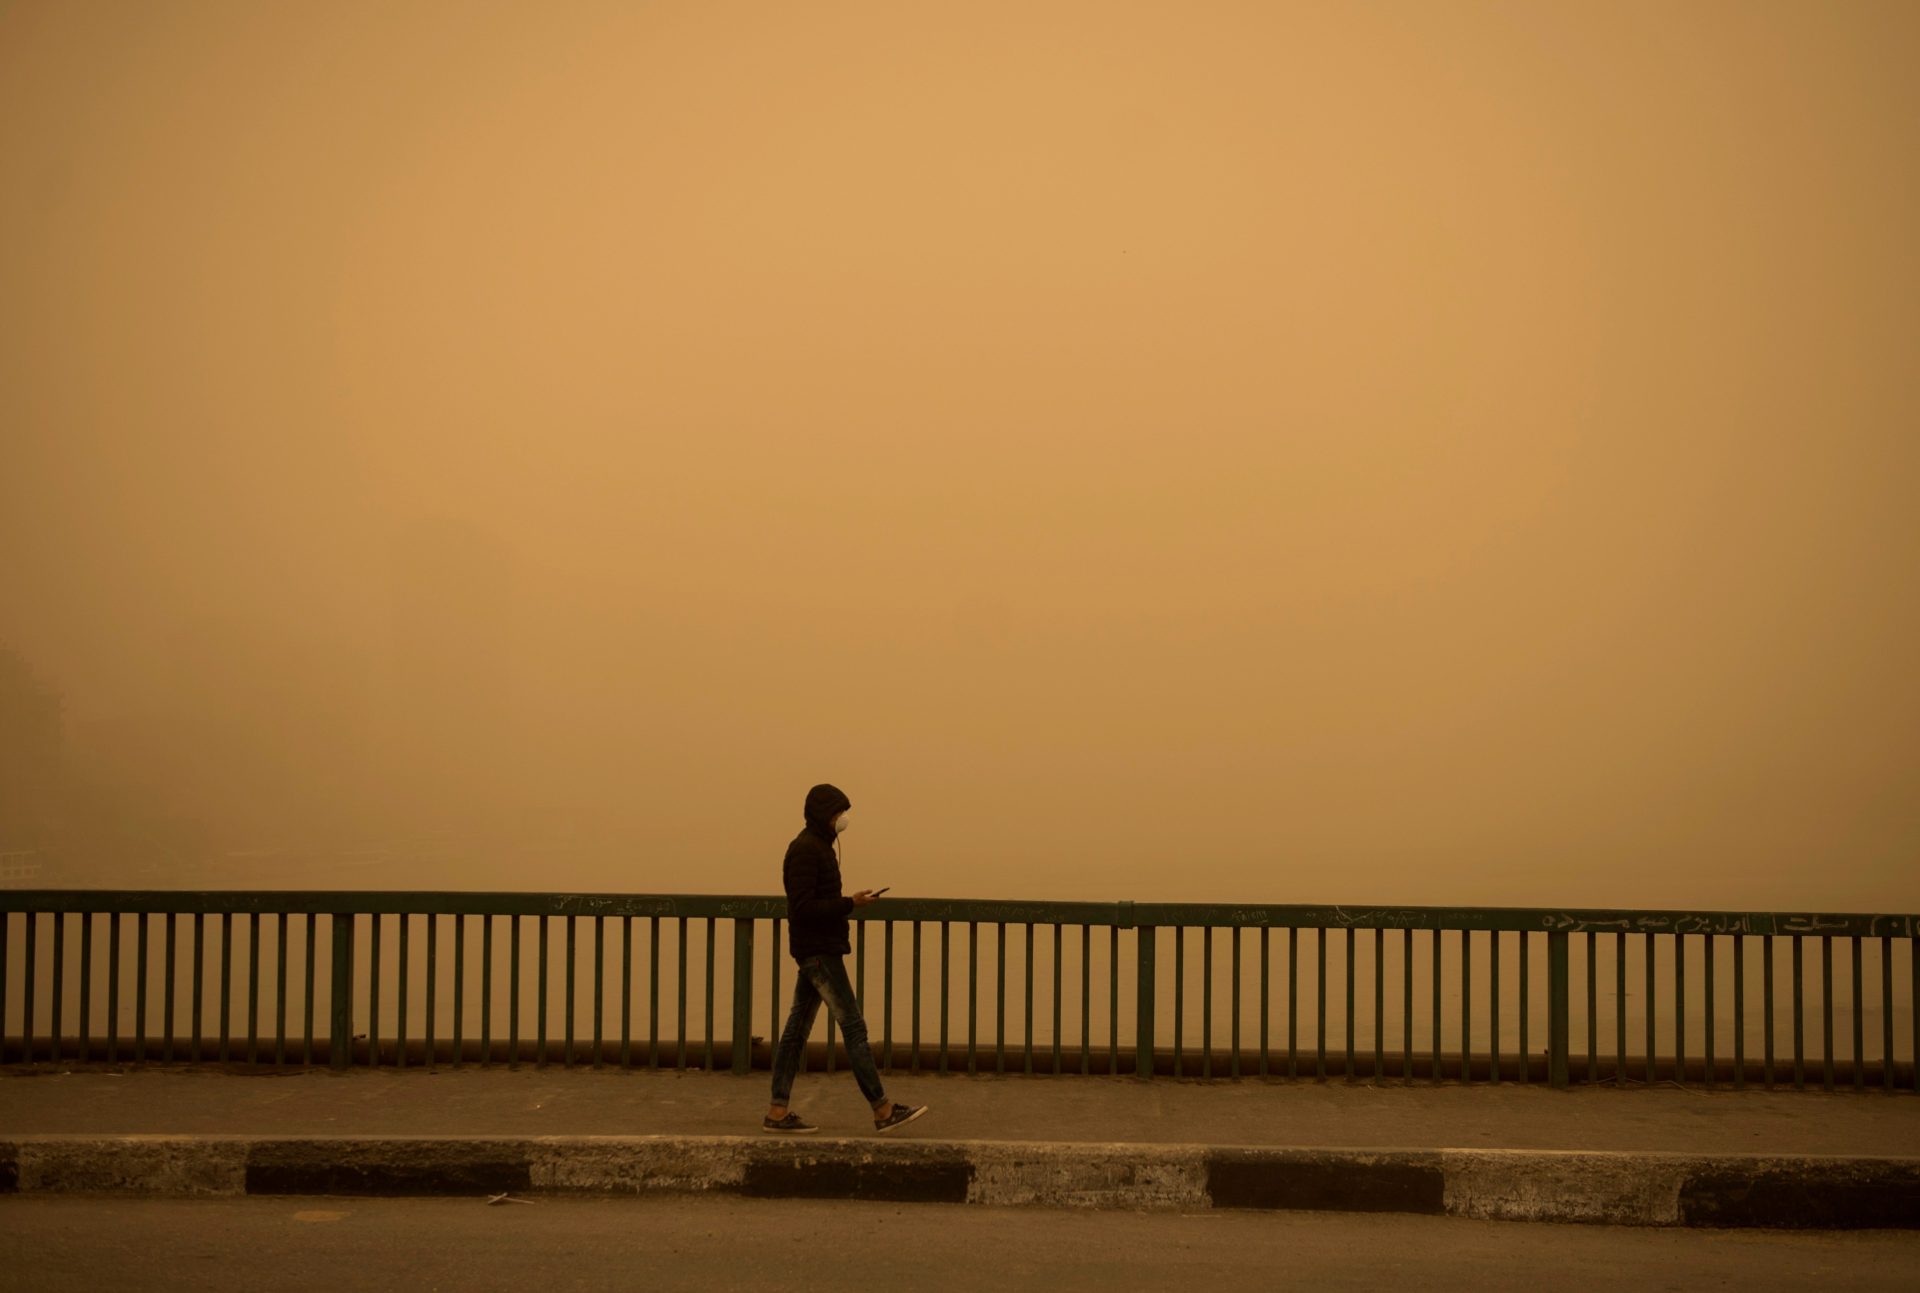 Un hombre sale a caminar durante una tormenta de arena en El Cairo, Egipto, en una fotografía de archivo. EFE/ Mohamed Hossam